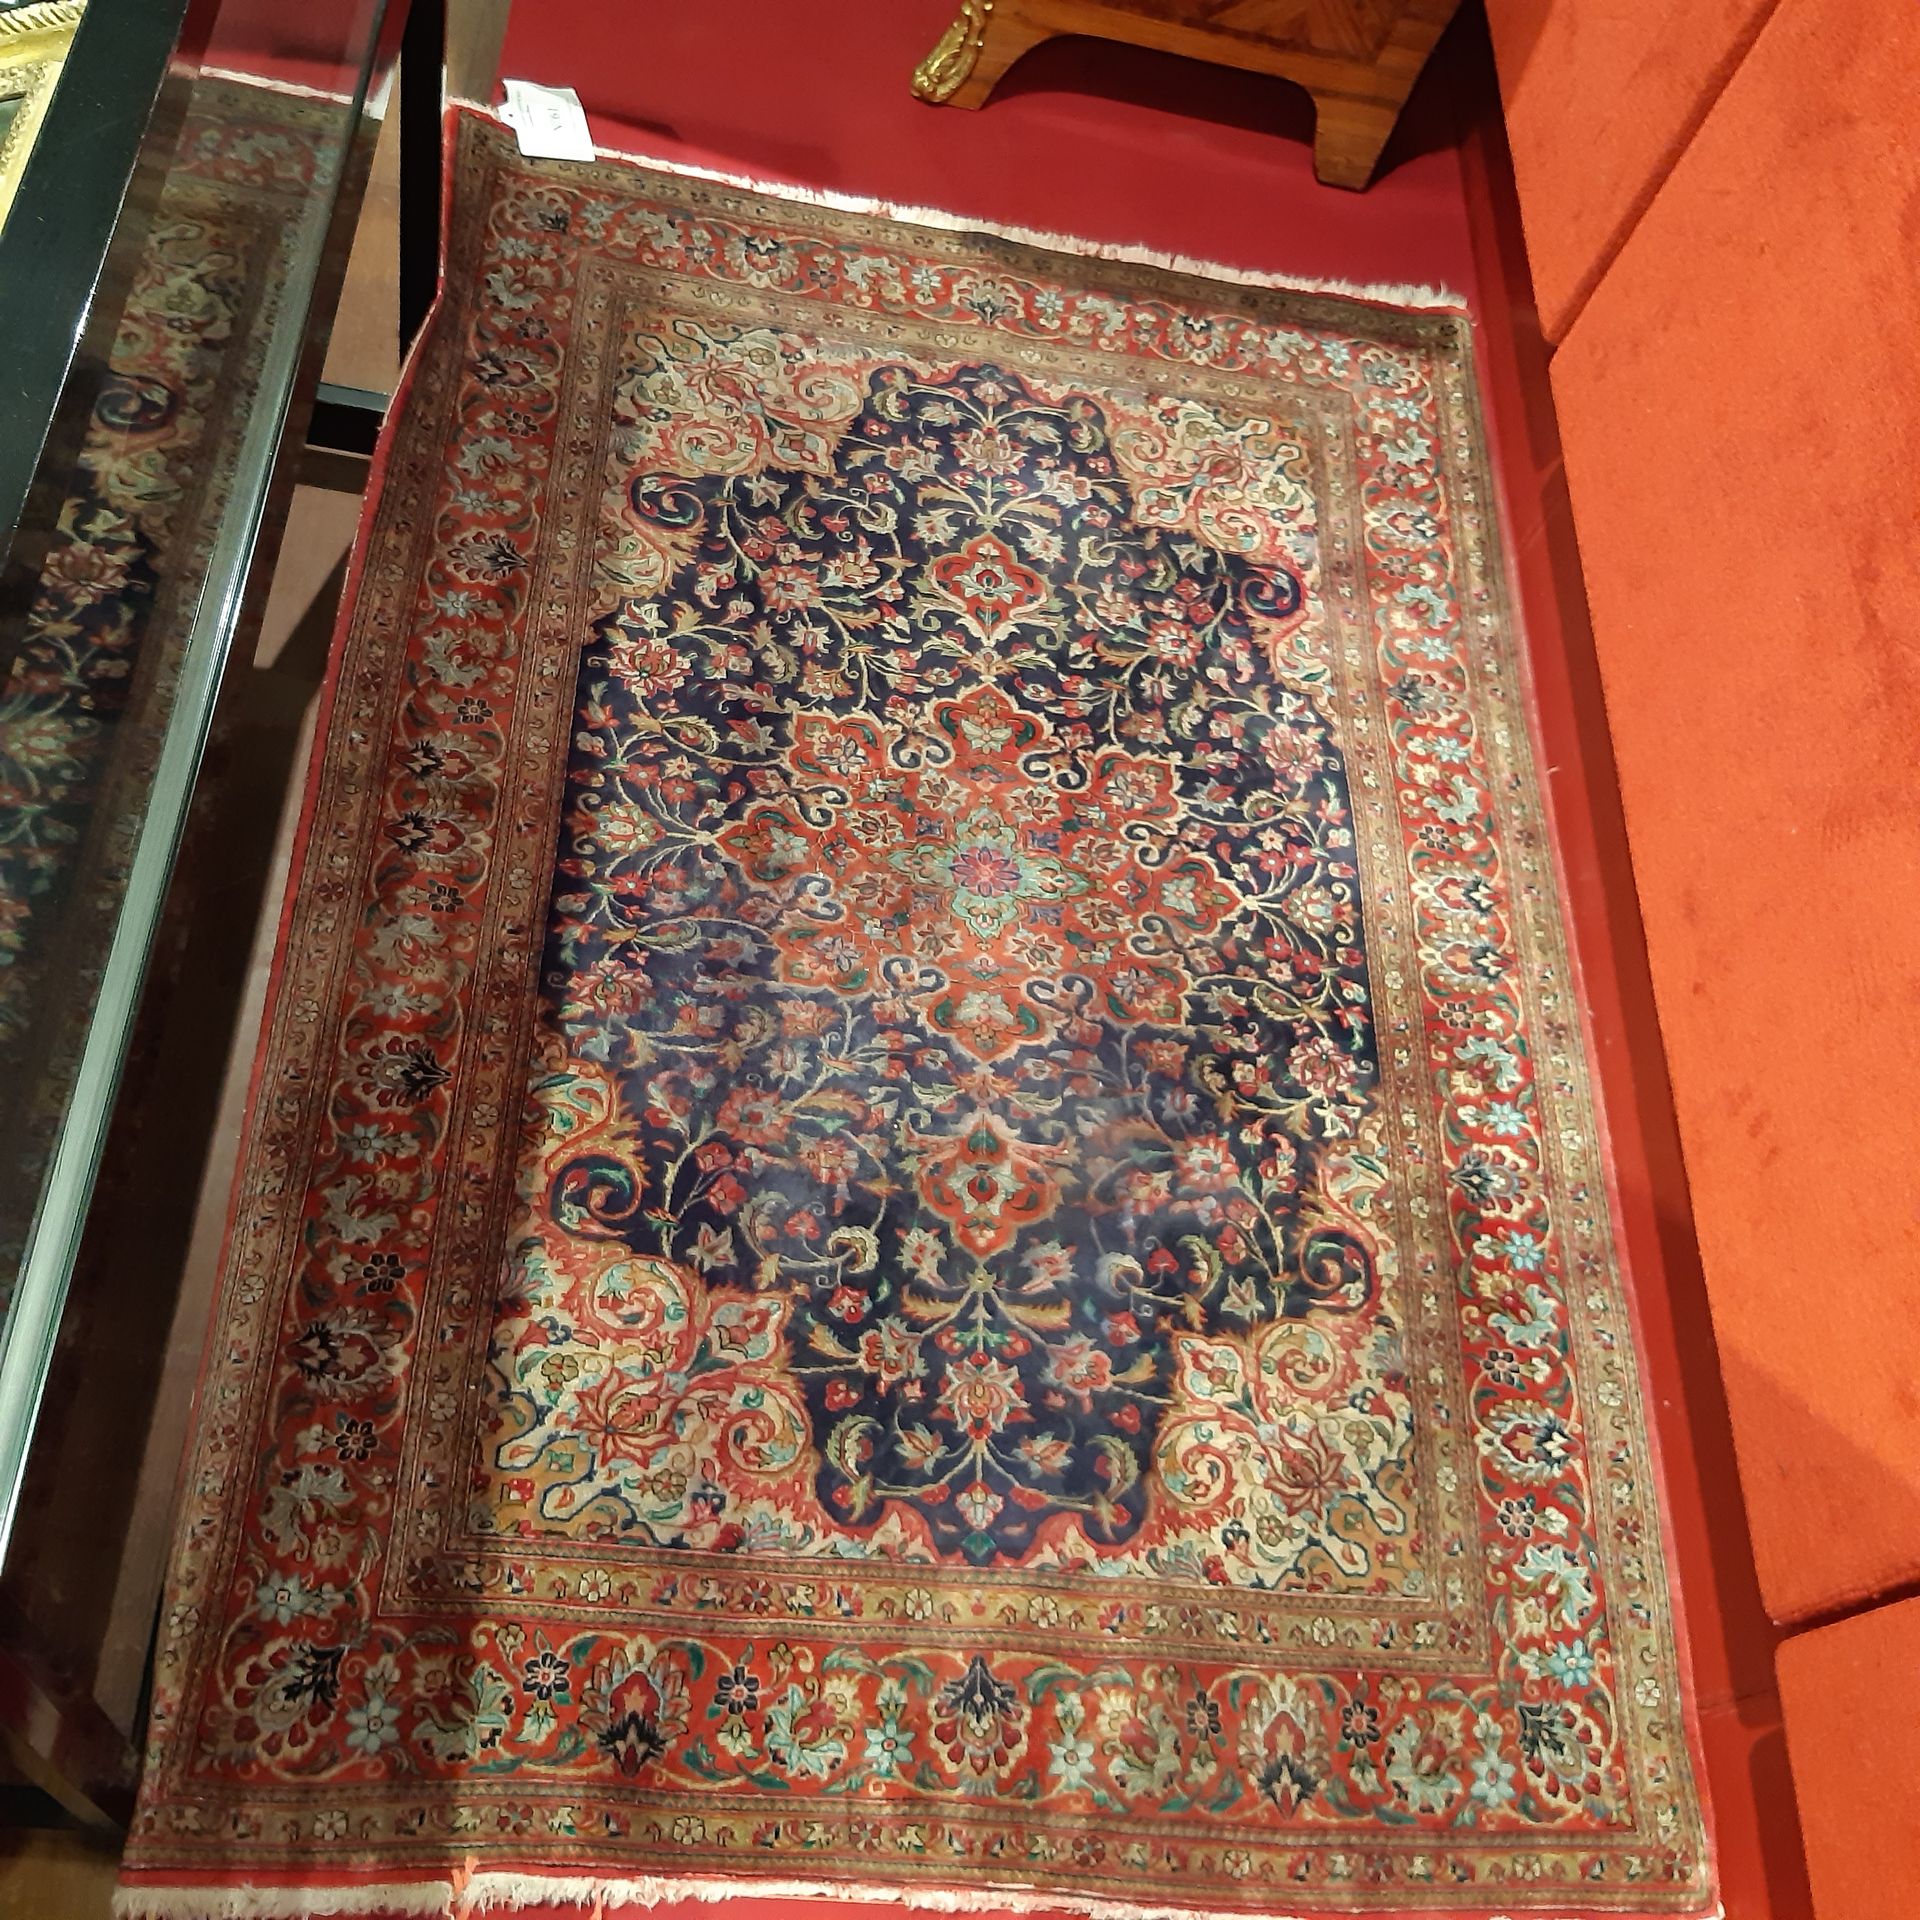 Null 
六条辫子之间的红色边框。
长：144厘米-宽：104厘米的现代波斯小地毯，装饰着蓝色叶子背景上的徽章和横幅。